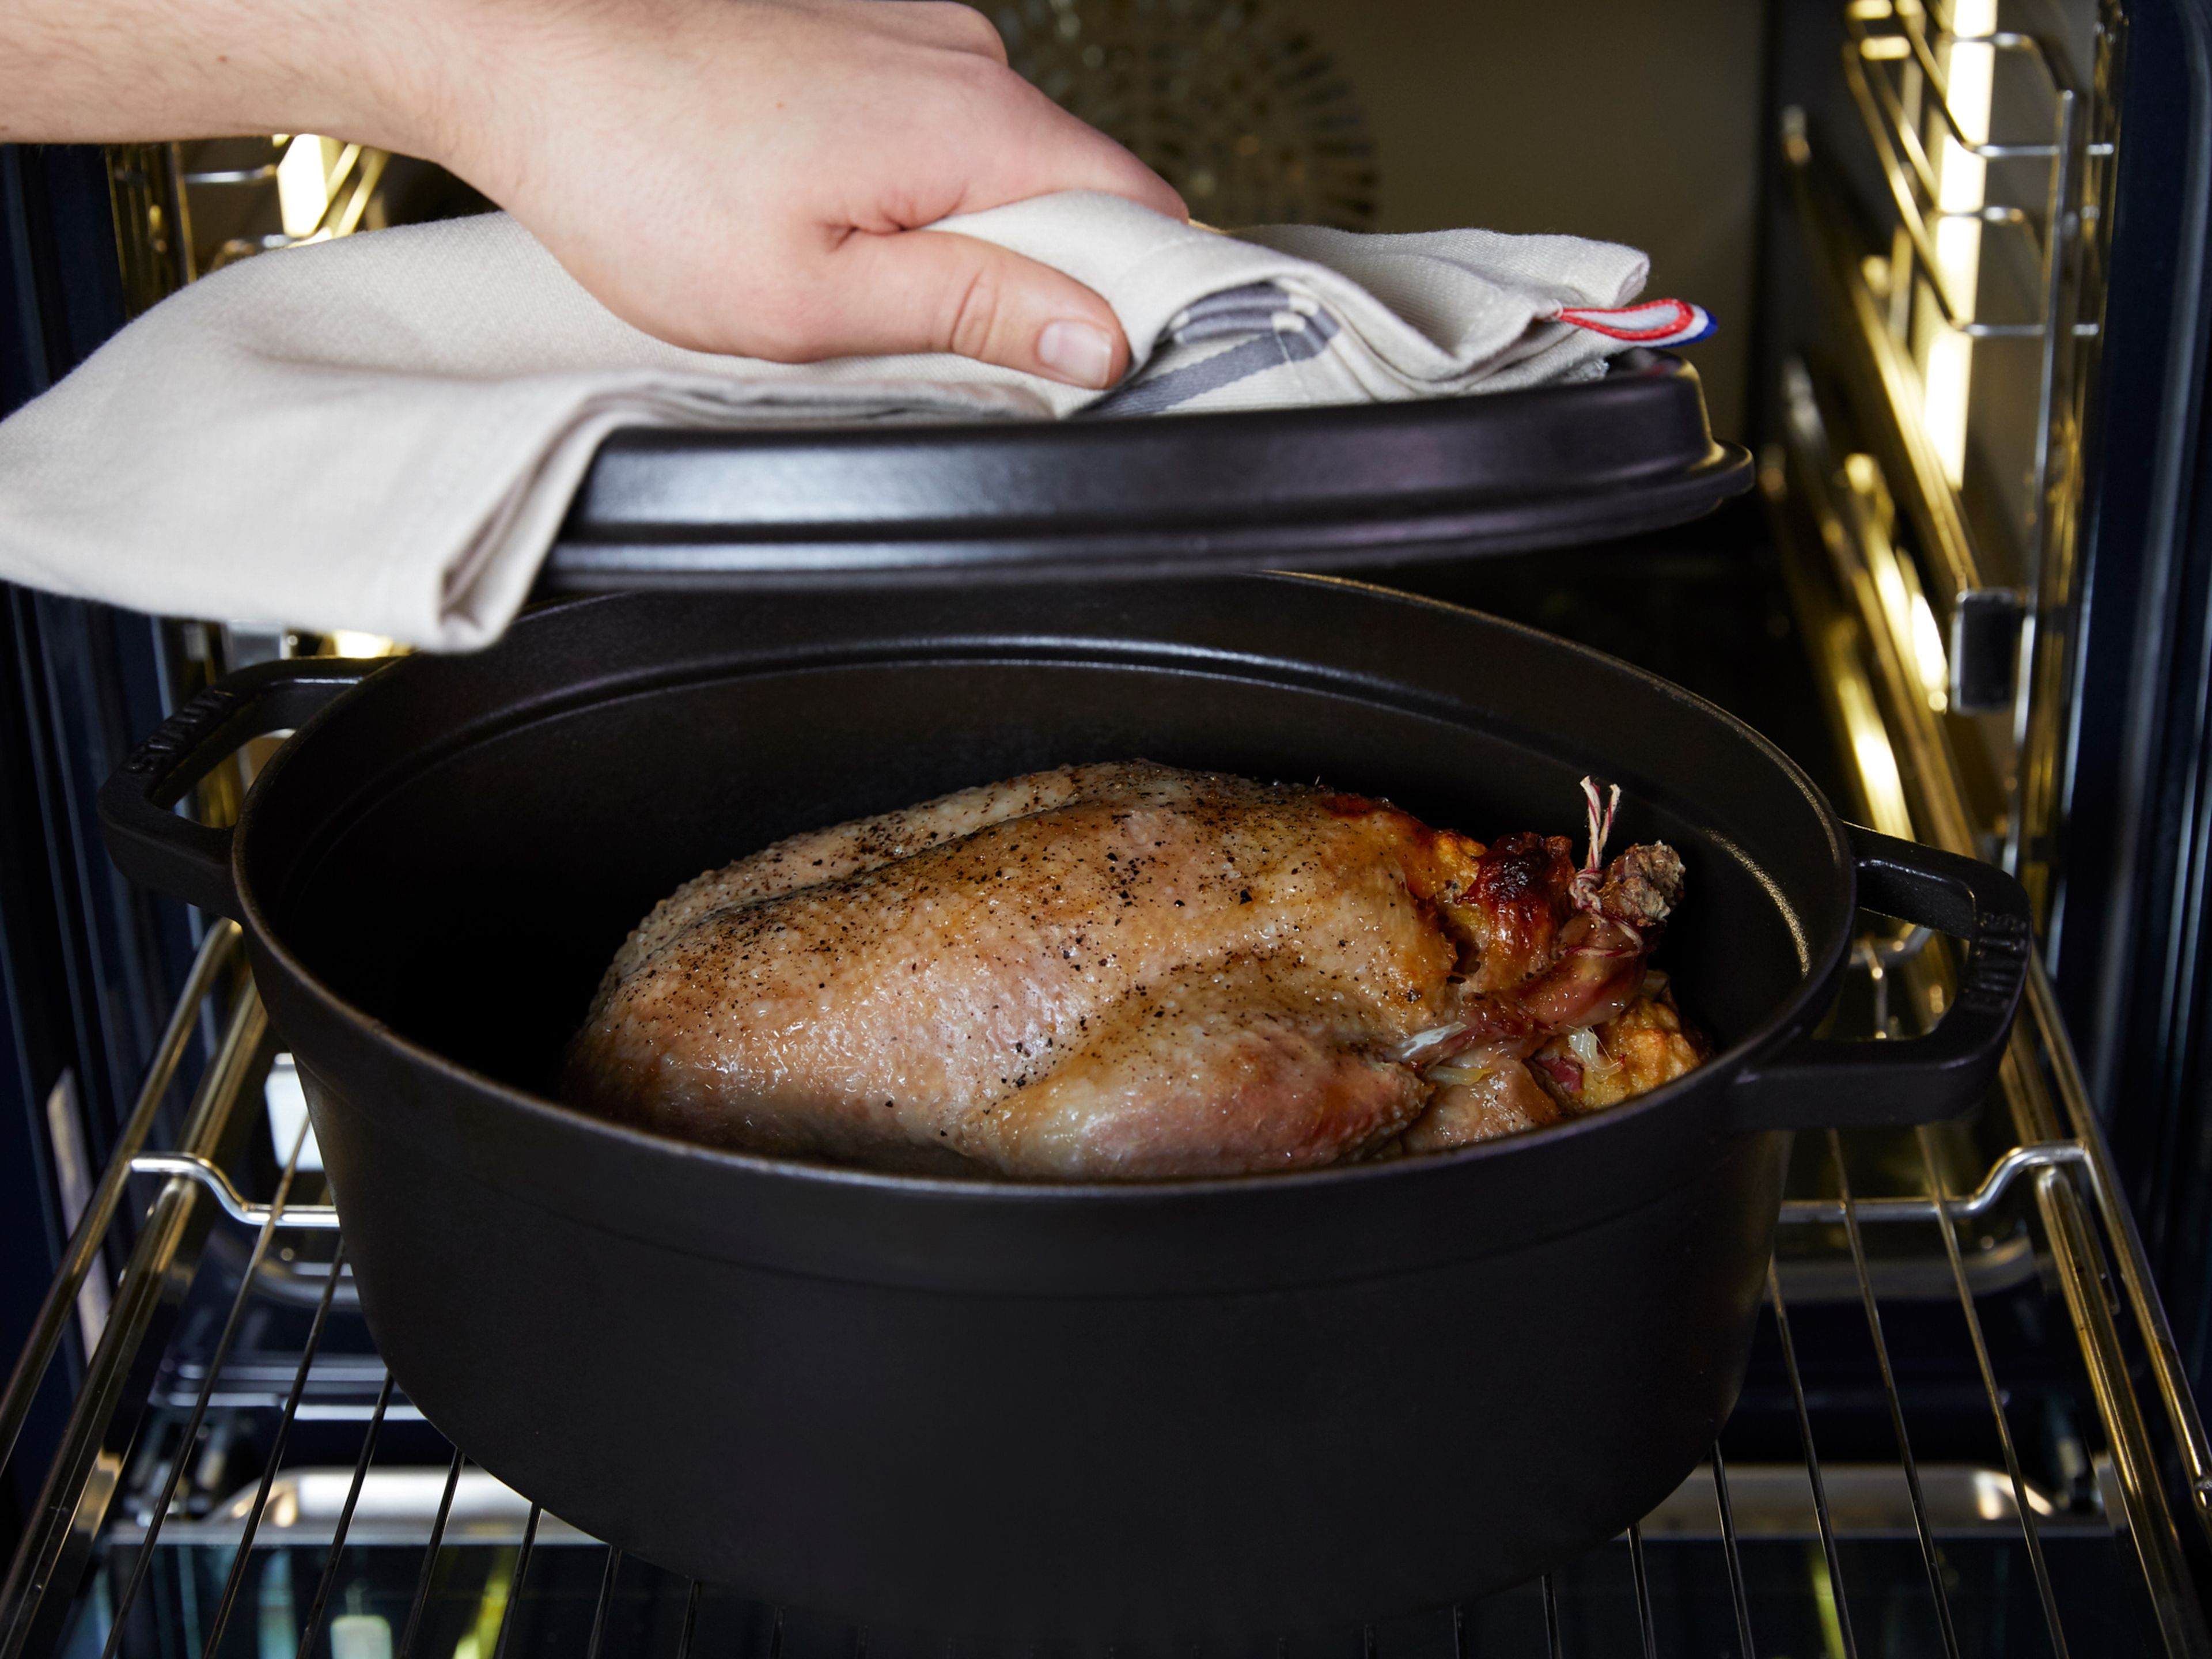 Die Ente auf eine Auflaufform legen und etwas Wasser hinzugeben. Jetzt die Form abdecken und in den Ofen stellen. Bei 180ºC für ca. 2 Std. braten, dann den Deckel entfernen, die Temperatur auf  200ºC erhöhen und für ca. 30 Min. weiter braten. Mit gekochten Rotkohl servieren und genießen!